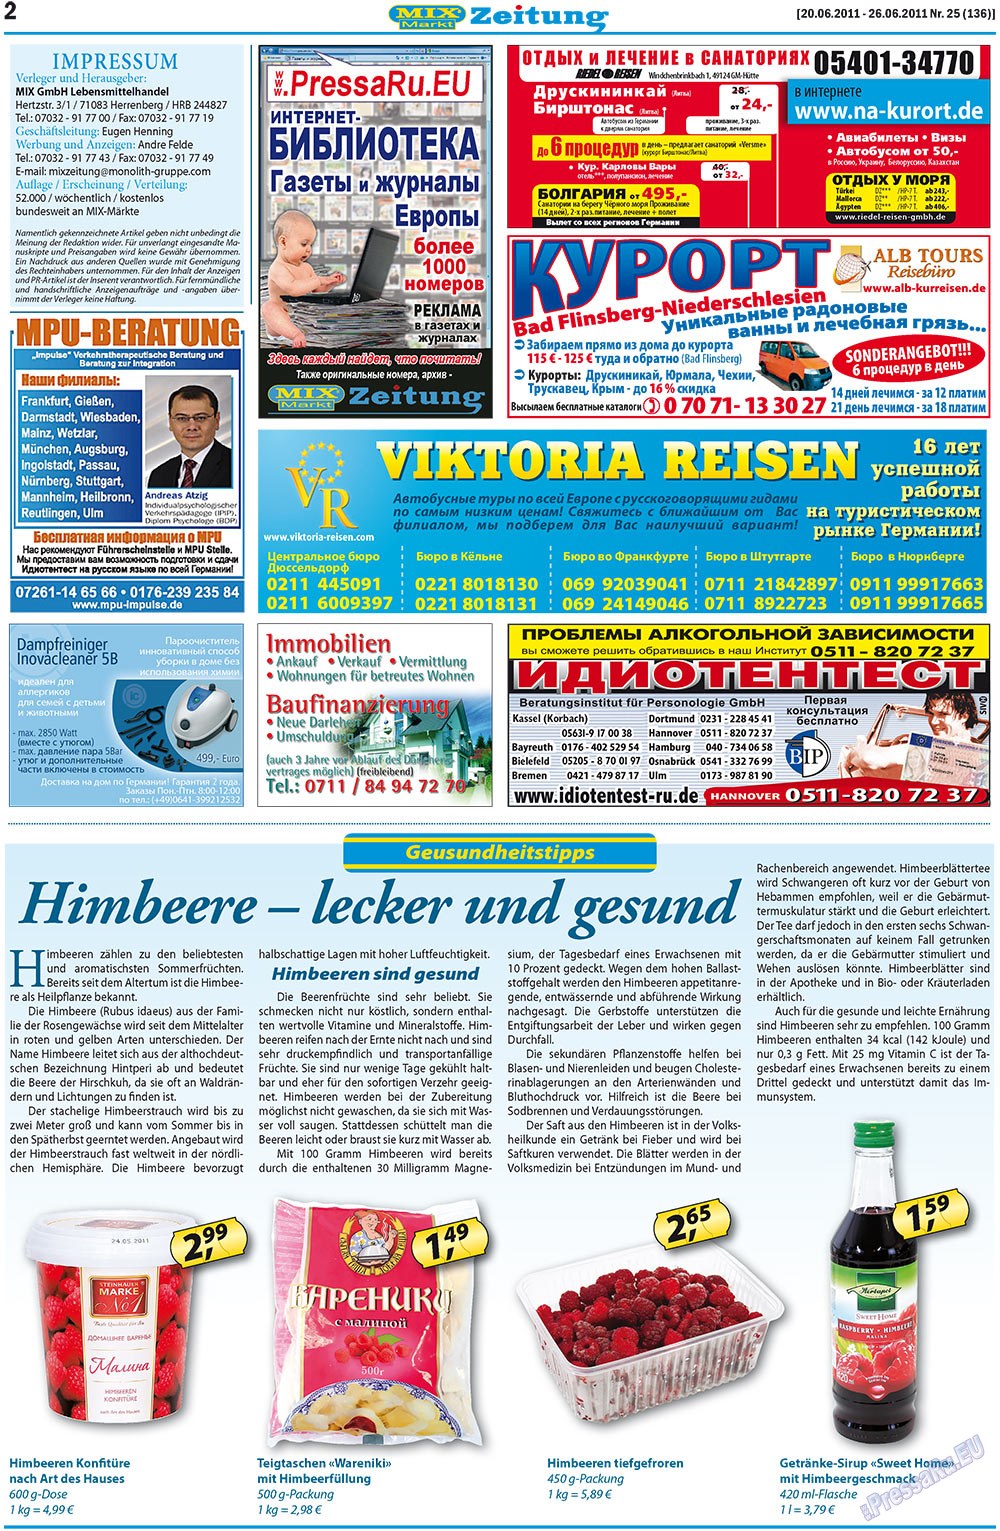 MIX-Markt Zeitung (Zeitung). 2011 Jahr, Ausgabe 25, Seite 2